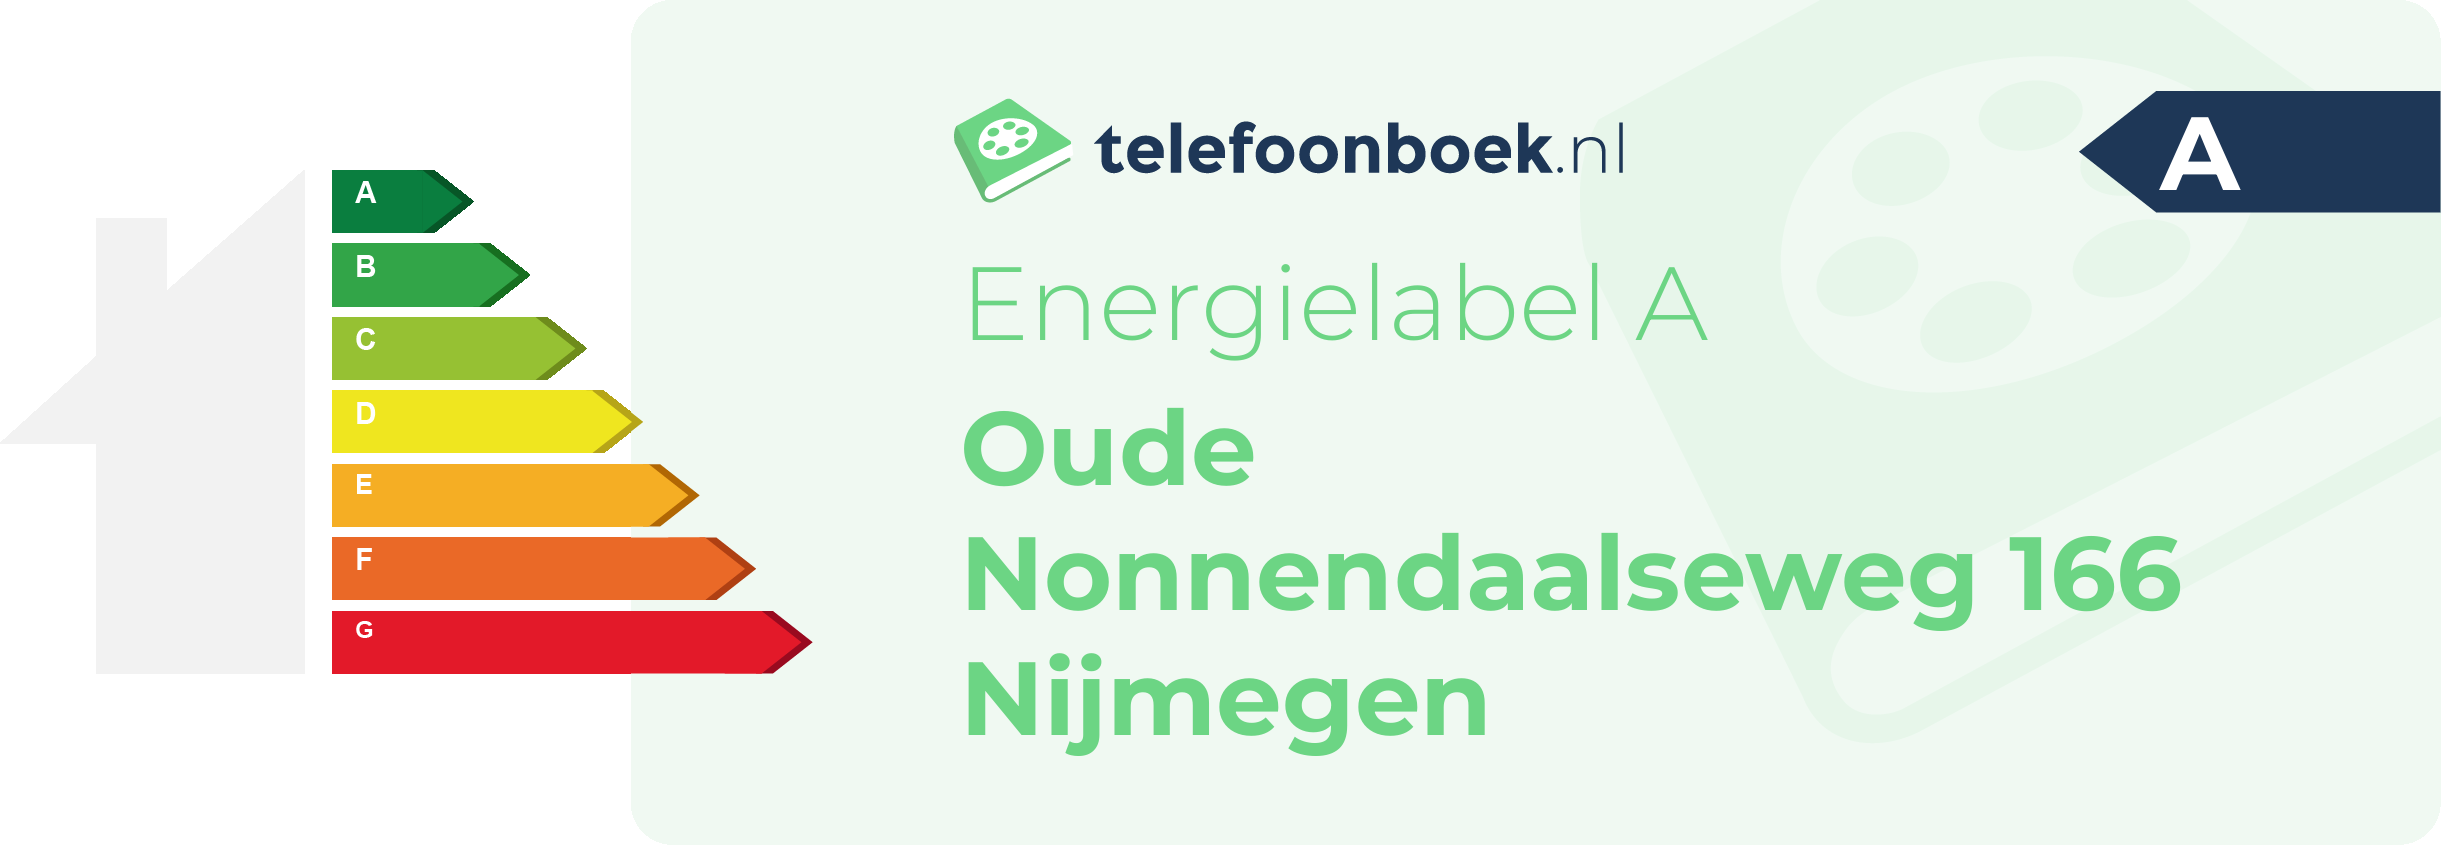 Energielabel Oude Nonnendaalseweg 166 Nijmegen